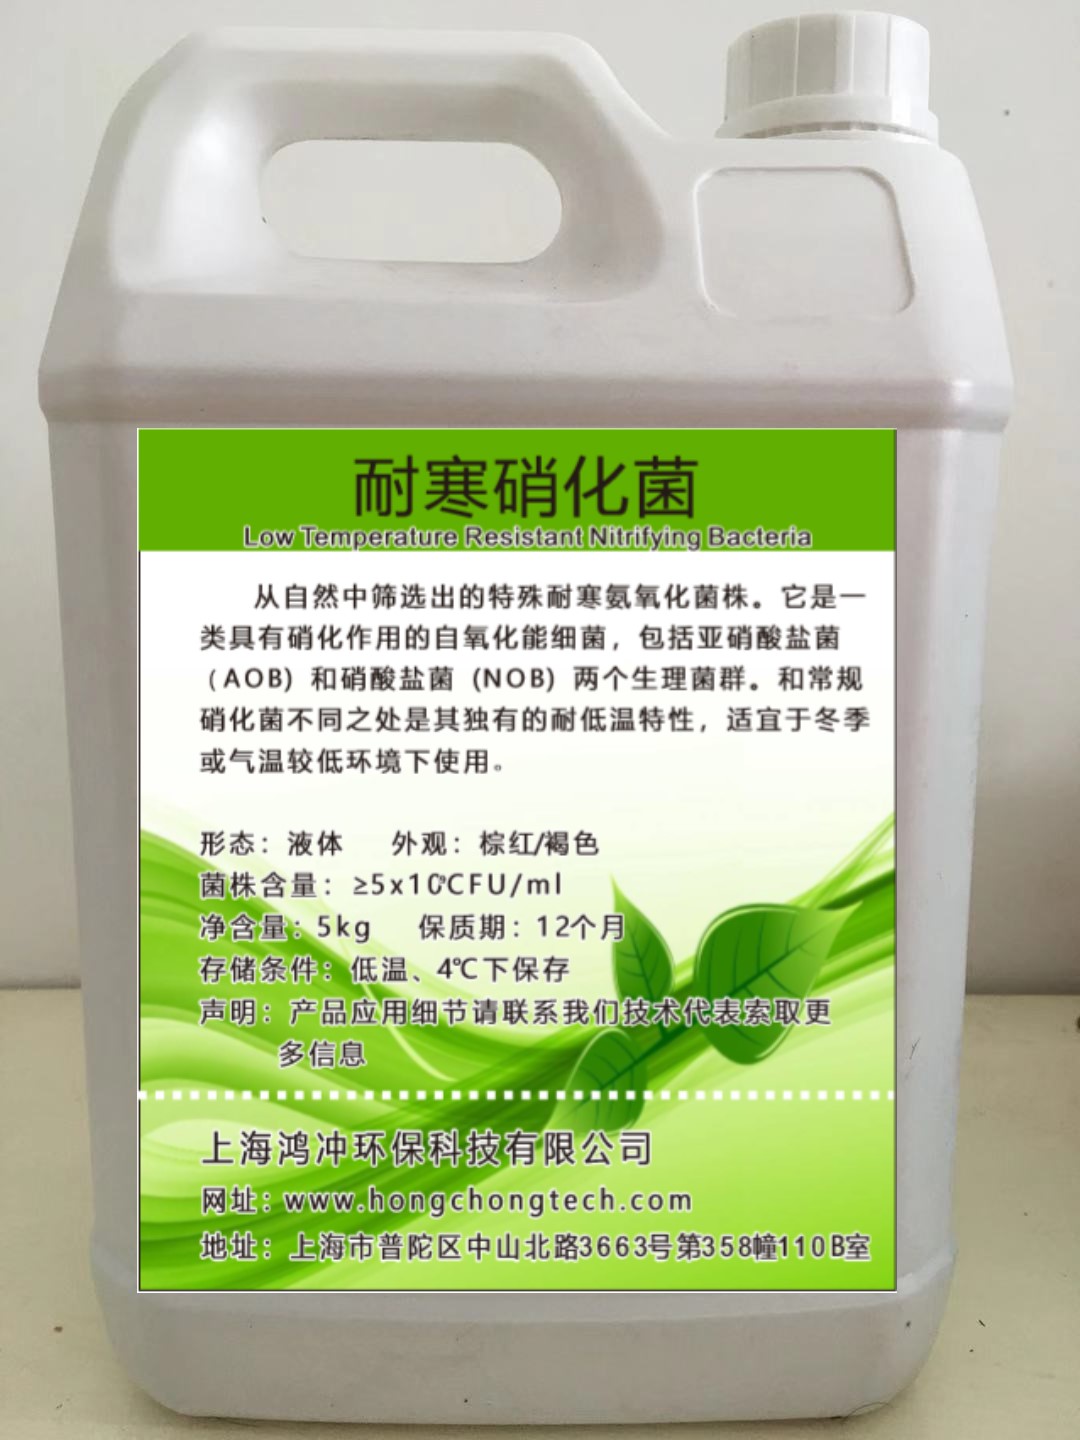 上海鴻沖環保耐寒硝化菌耐低溫氨氮降解菌